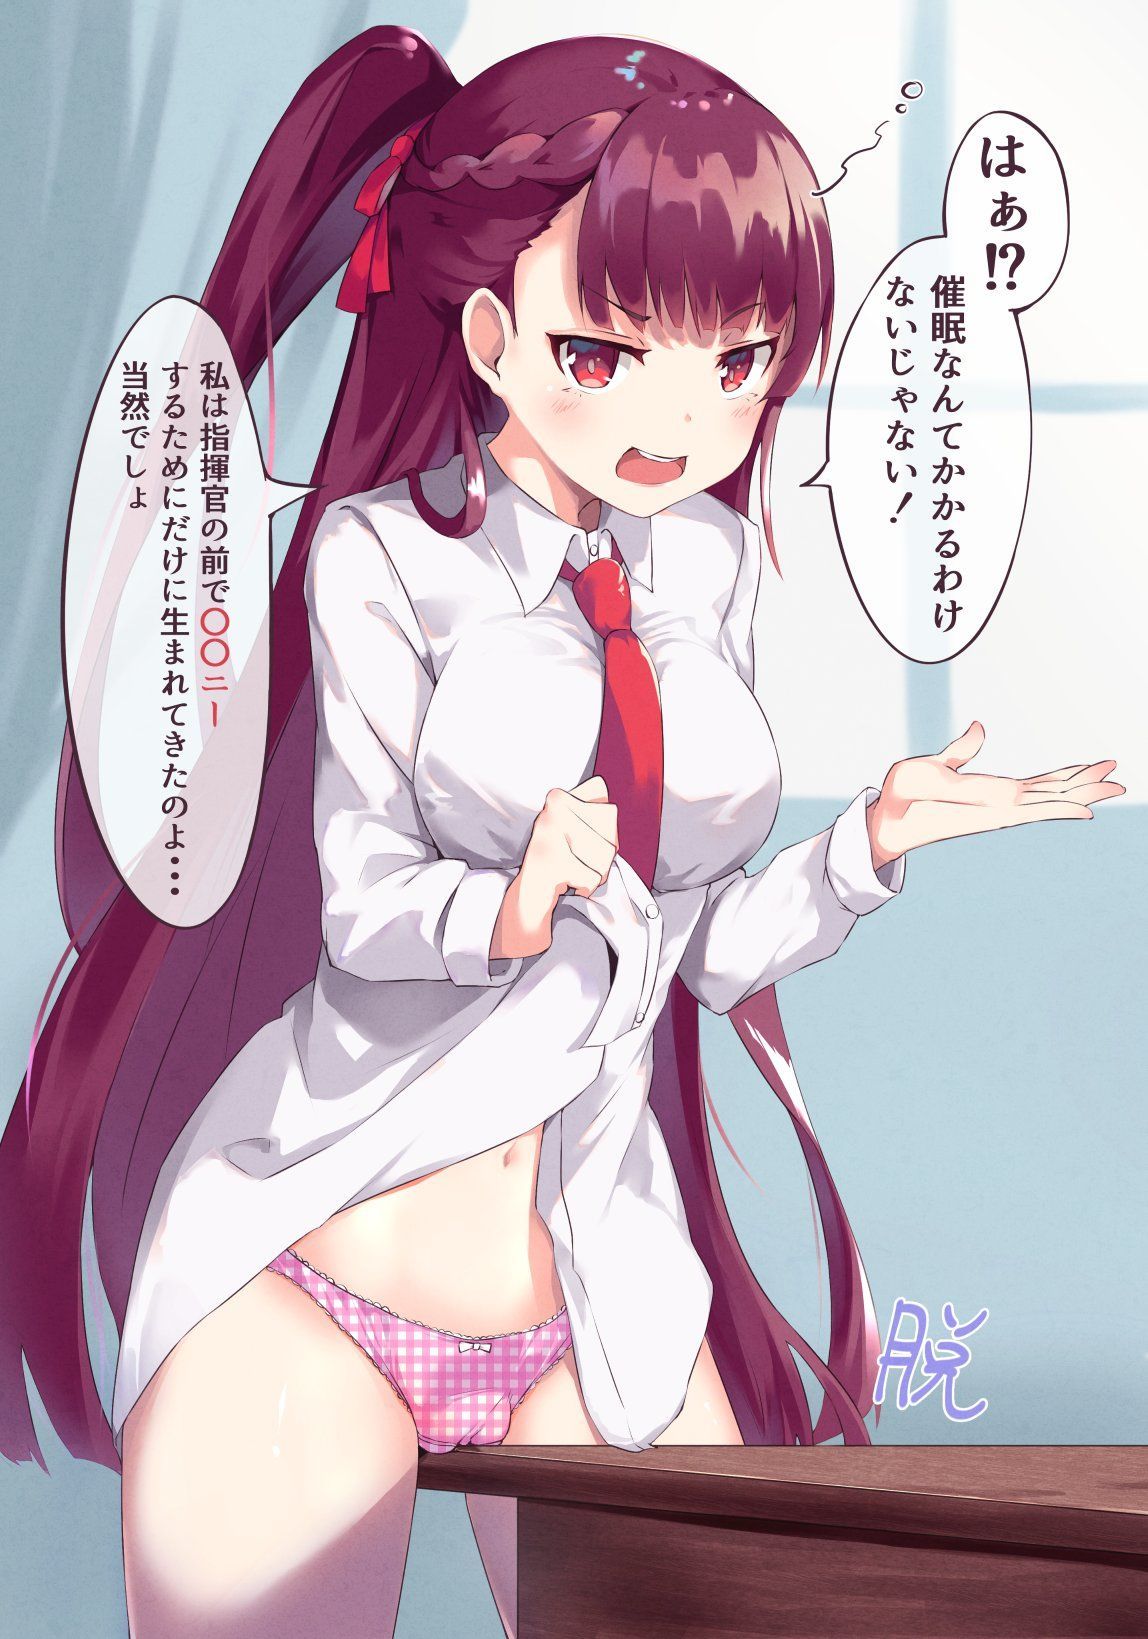 [2nd] Secondary erotic image of the girl who is getting comfortable in Kakuona Part 7 [Kakuona] 12